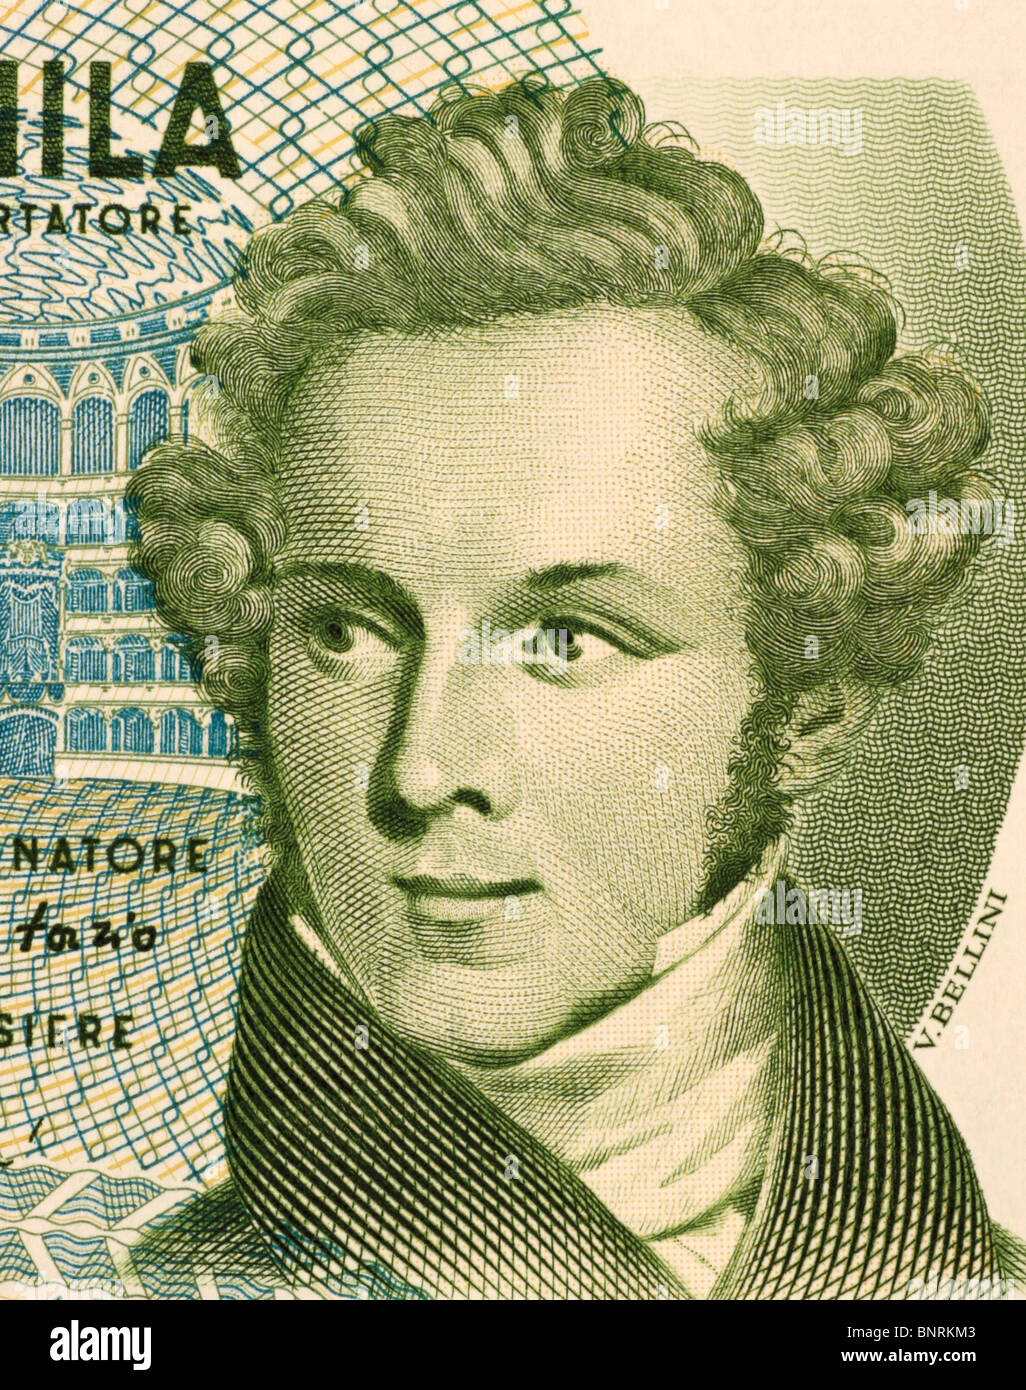 Vincenzo Bellini (1801-1835) auf 5000 Lire 1985 Banknote aus Italien. Italienischer Komponist. Stockfoto